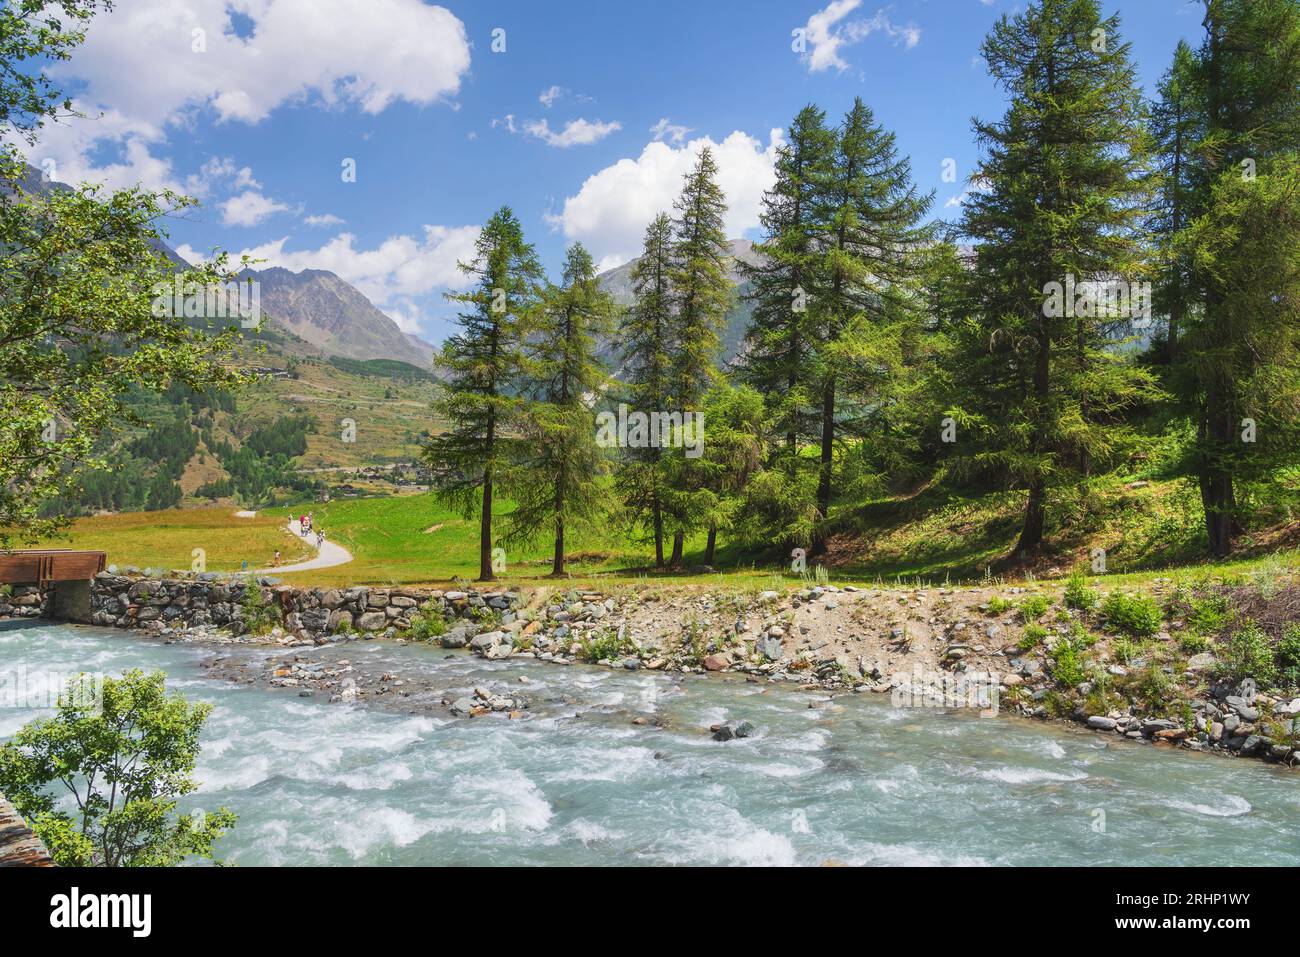 Berglandschaft im Sommer in Prati di Sant'Orso, italienische Alpen. Ein Bach, Bäume und ein Pfad. Cogne, Aosta Valley, Italien Stockfoto